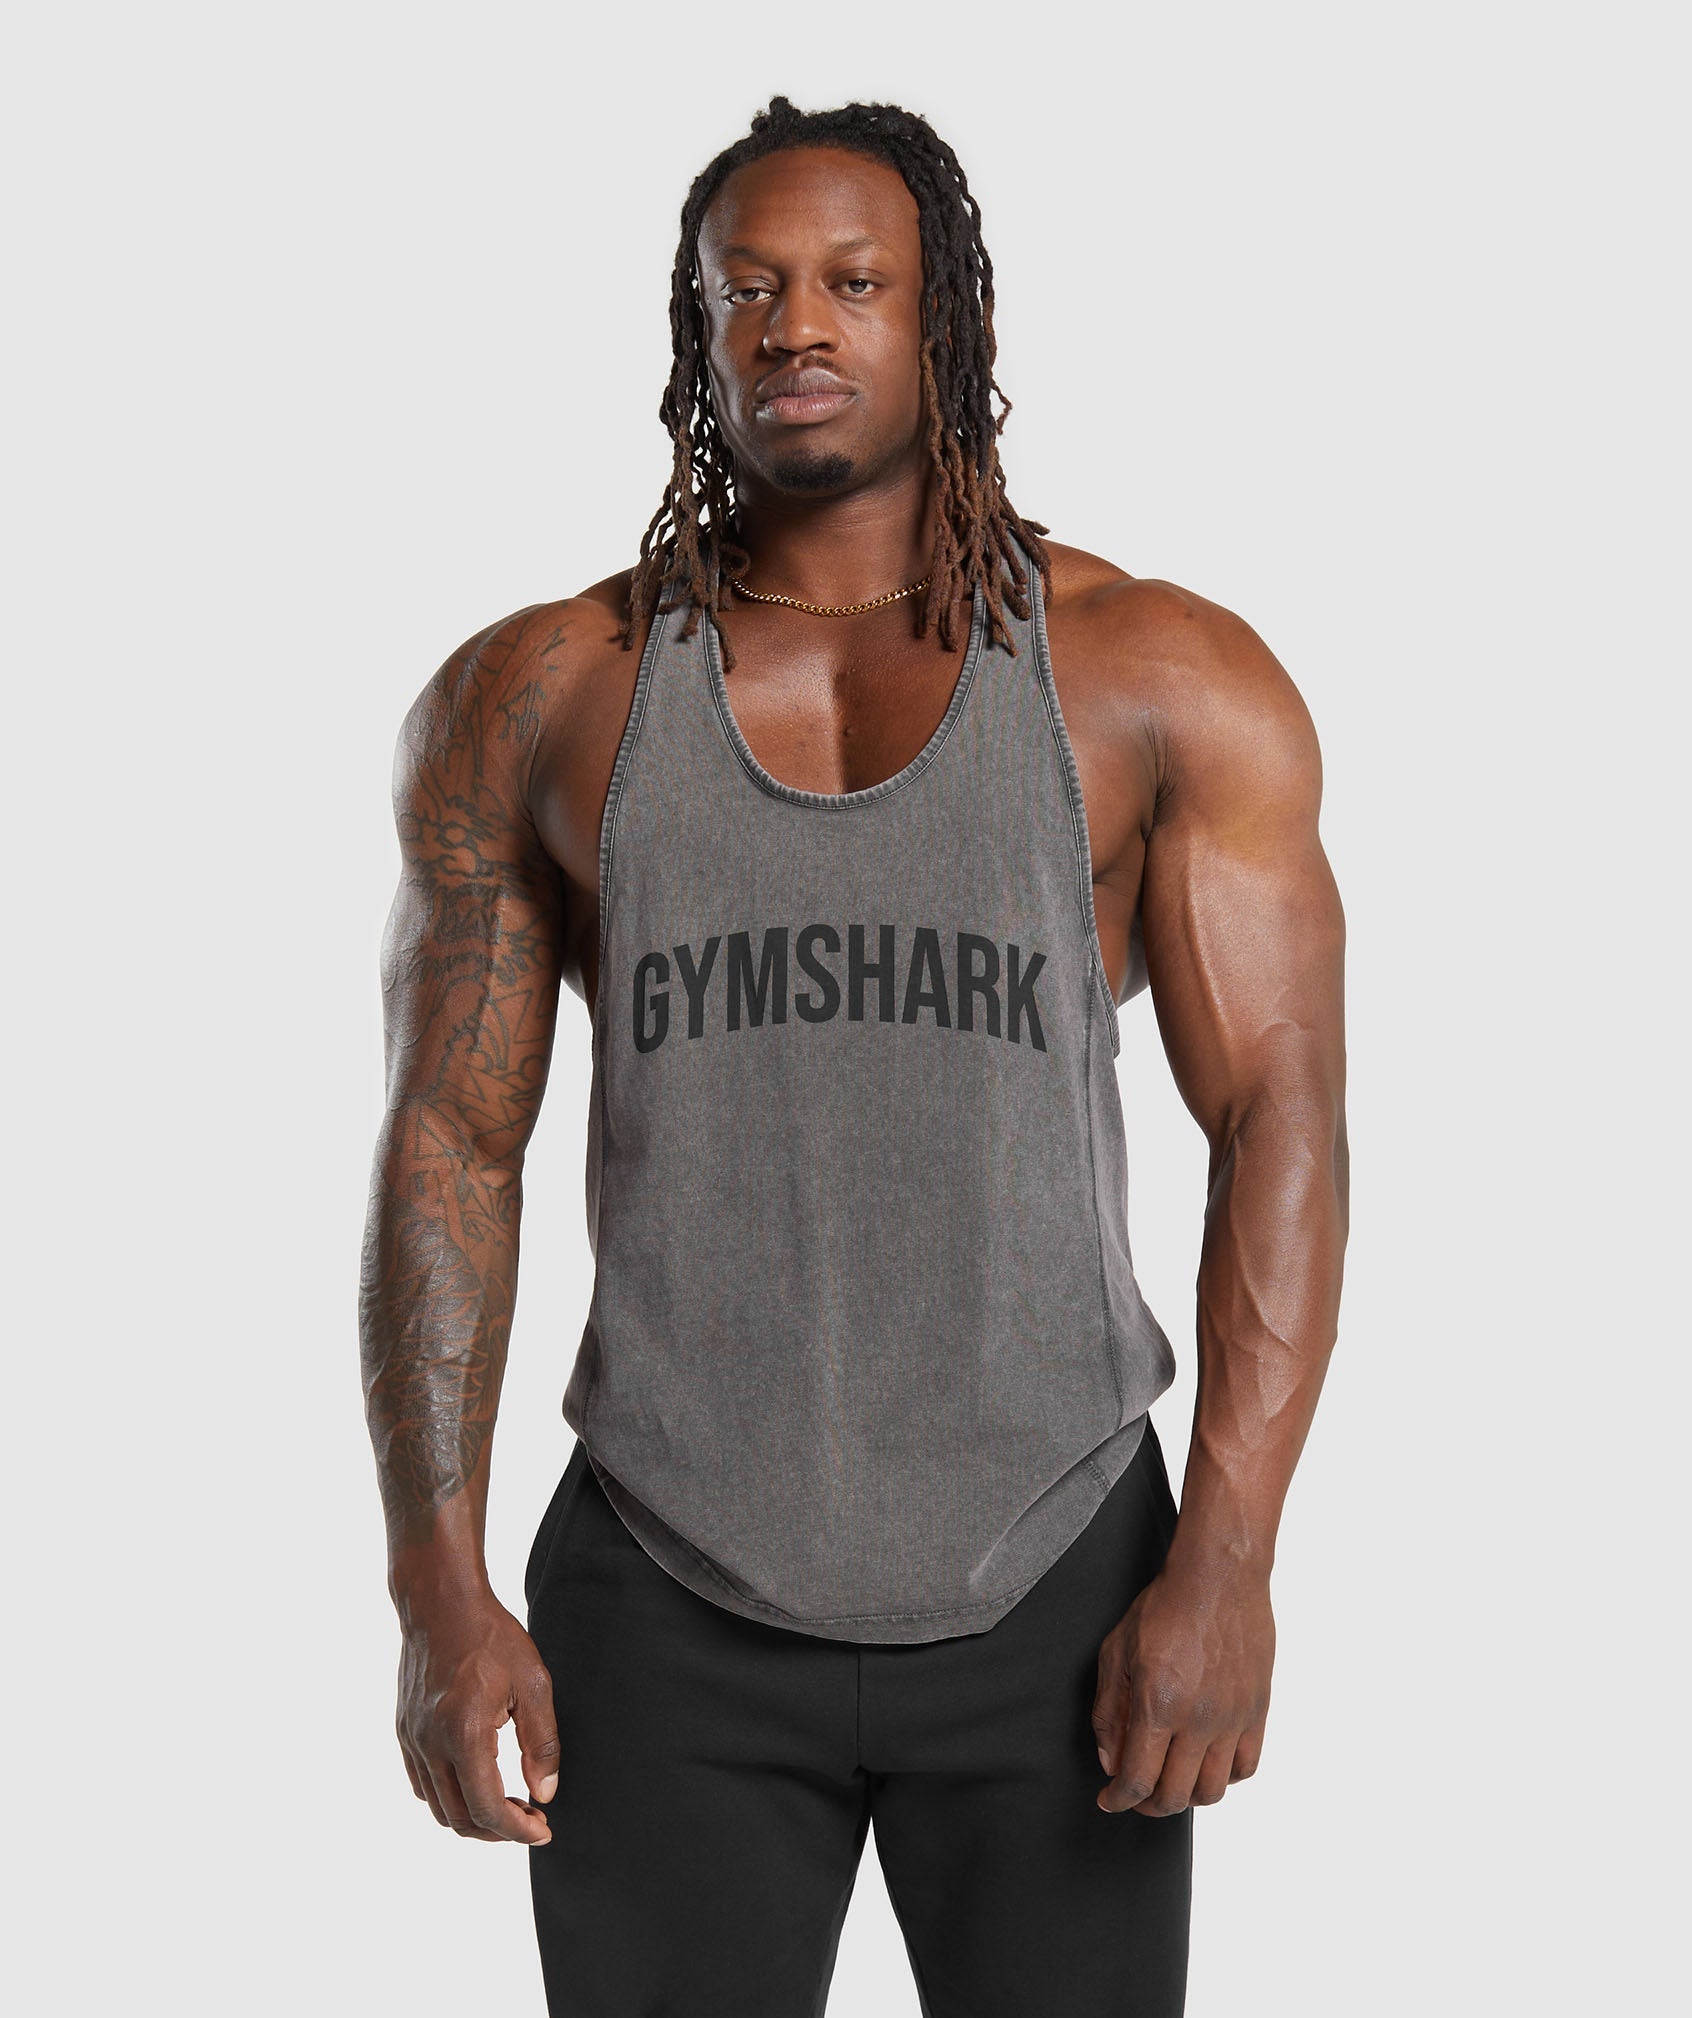 Hot Arrival Gym Shark Men's LoudMouth Stringer Tank Tops, Gymshark